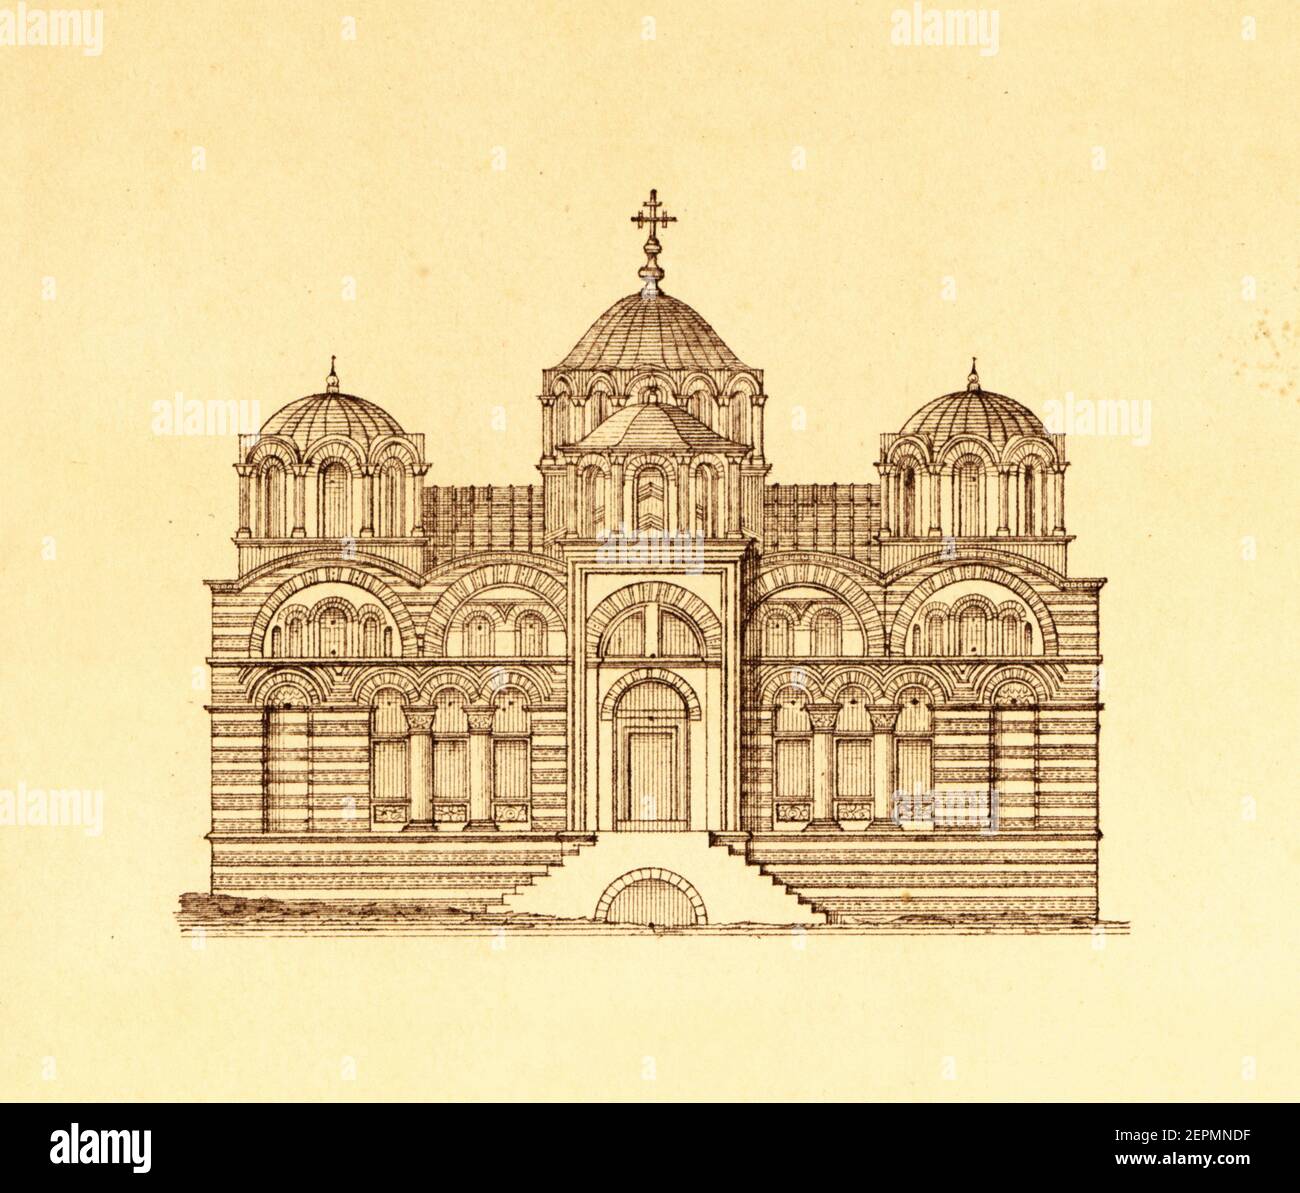 Illustration du XIXe siècle de l'église de Pammakaristos à Istanbul, Turquie. Gravure publiée dans Vergleichende Architektonische Formenlehre par Carl S. Banque D'Images